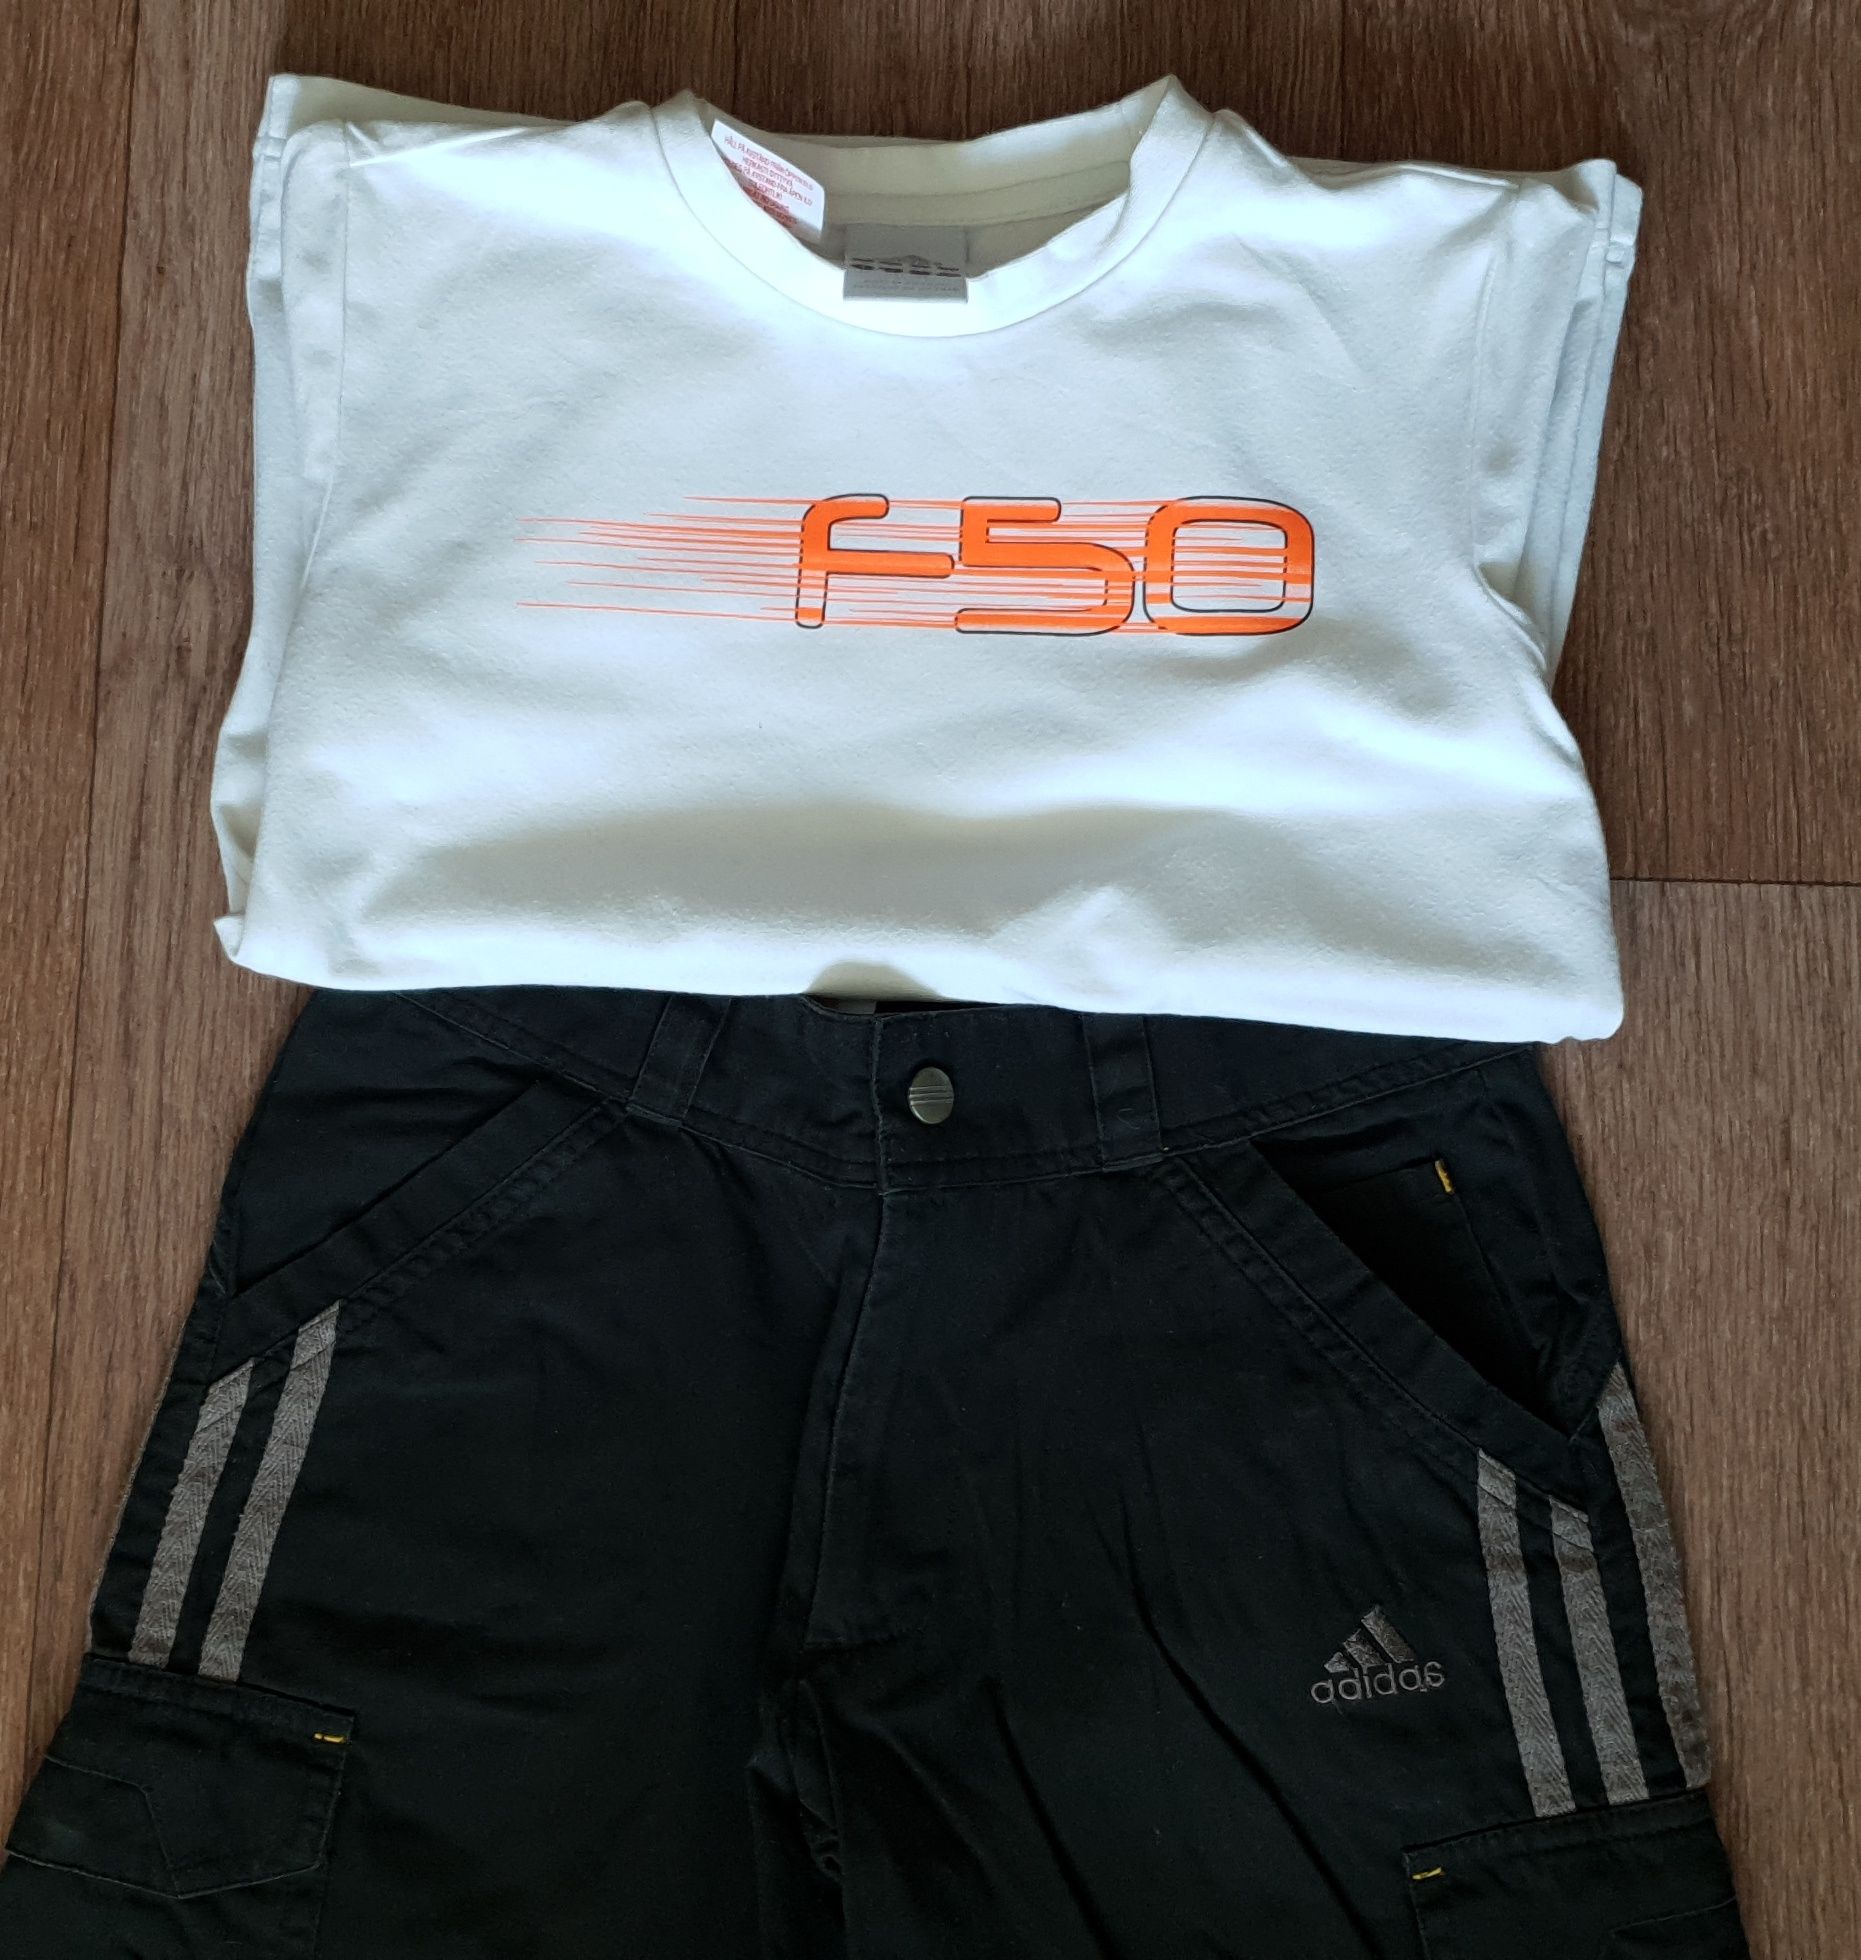 Набор Adidas, шорты и футболка, оригинал, 8-10лет, б/у.